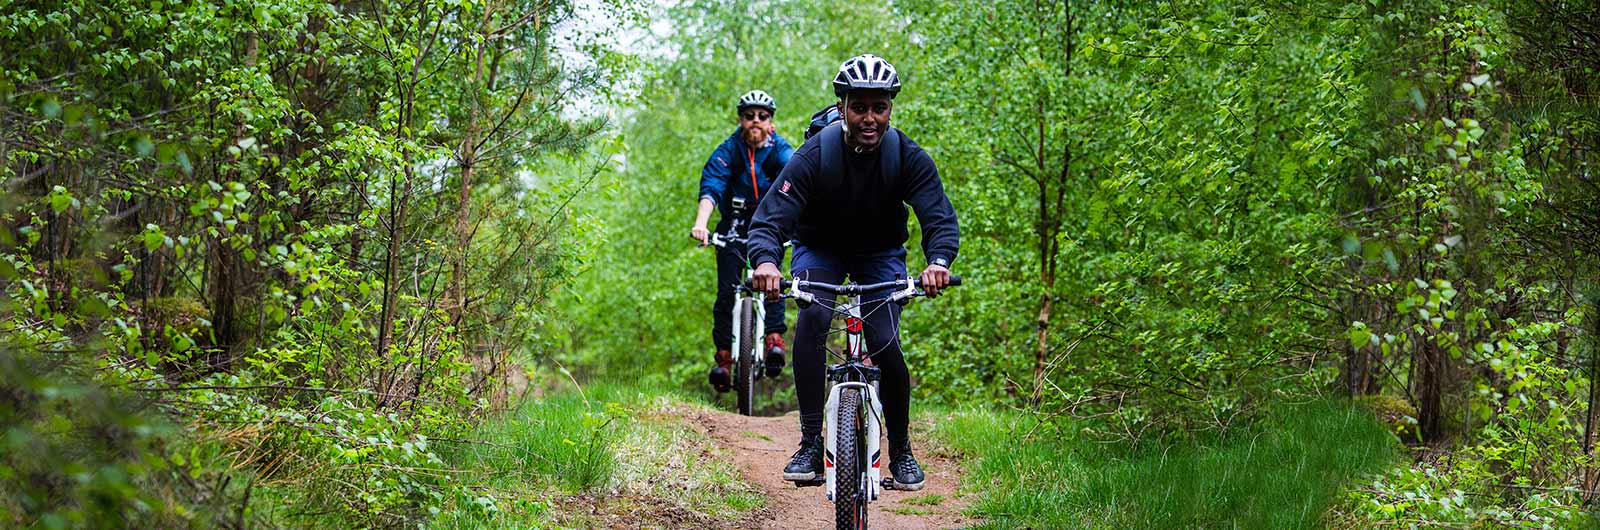 äventyr på cykel i skogen